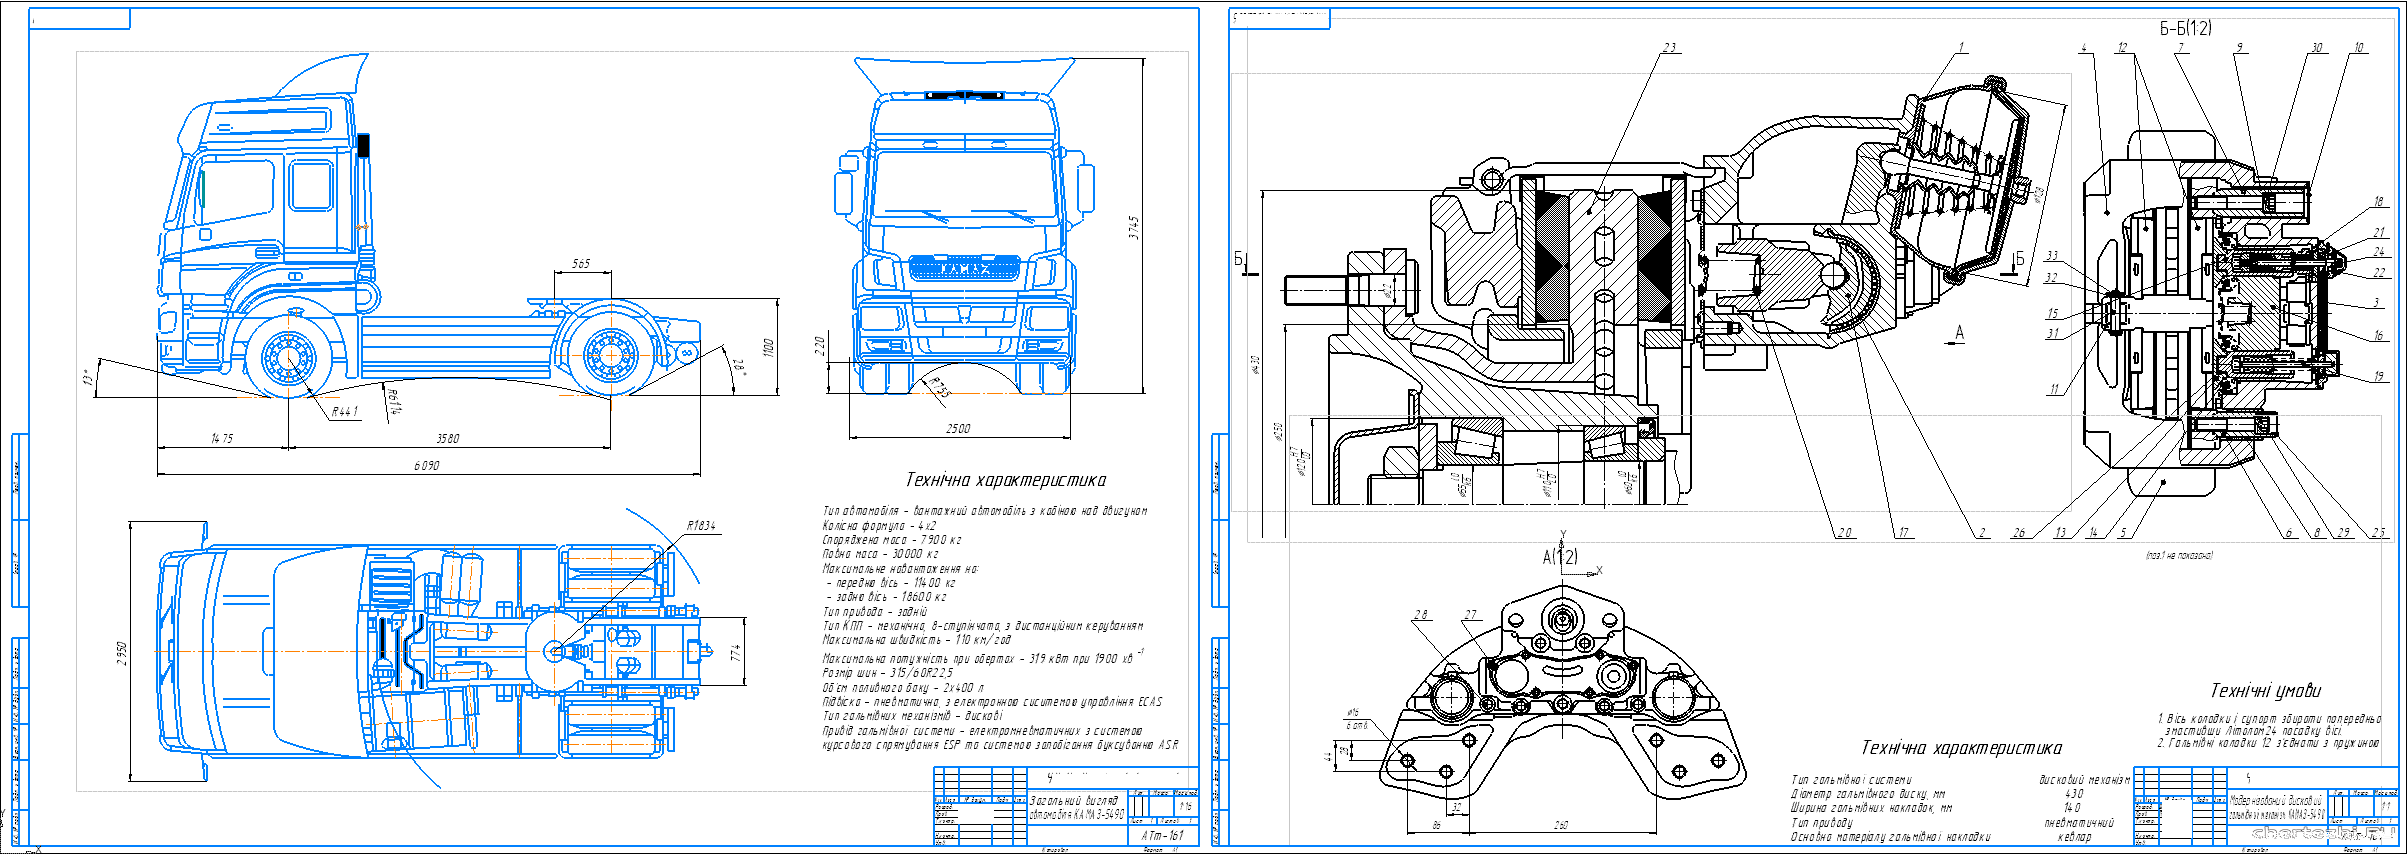 Бакалаврська робота - Проект вантажного автомобіля з модернізацією системи гальмування на базі автомобіля КАМАЗ-5490